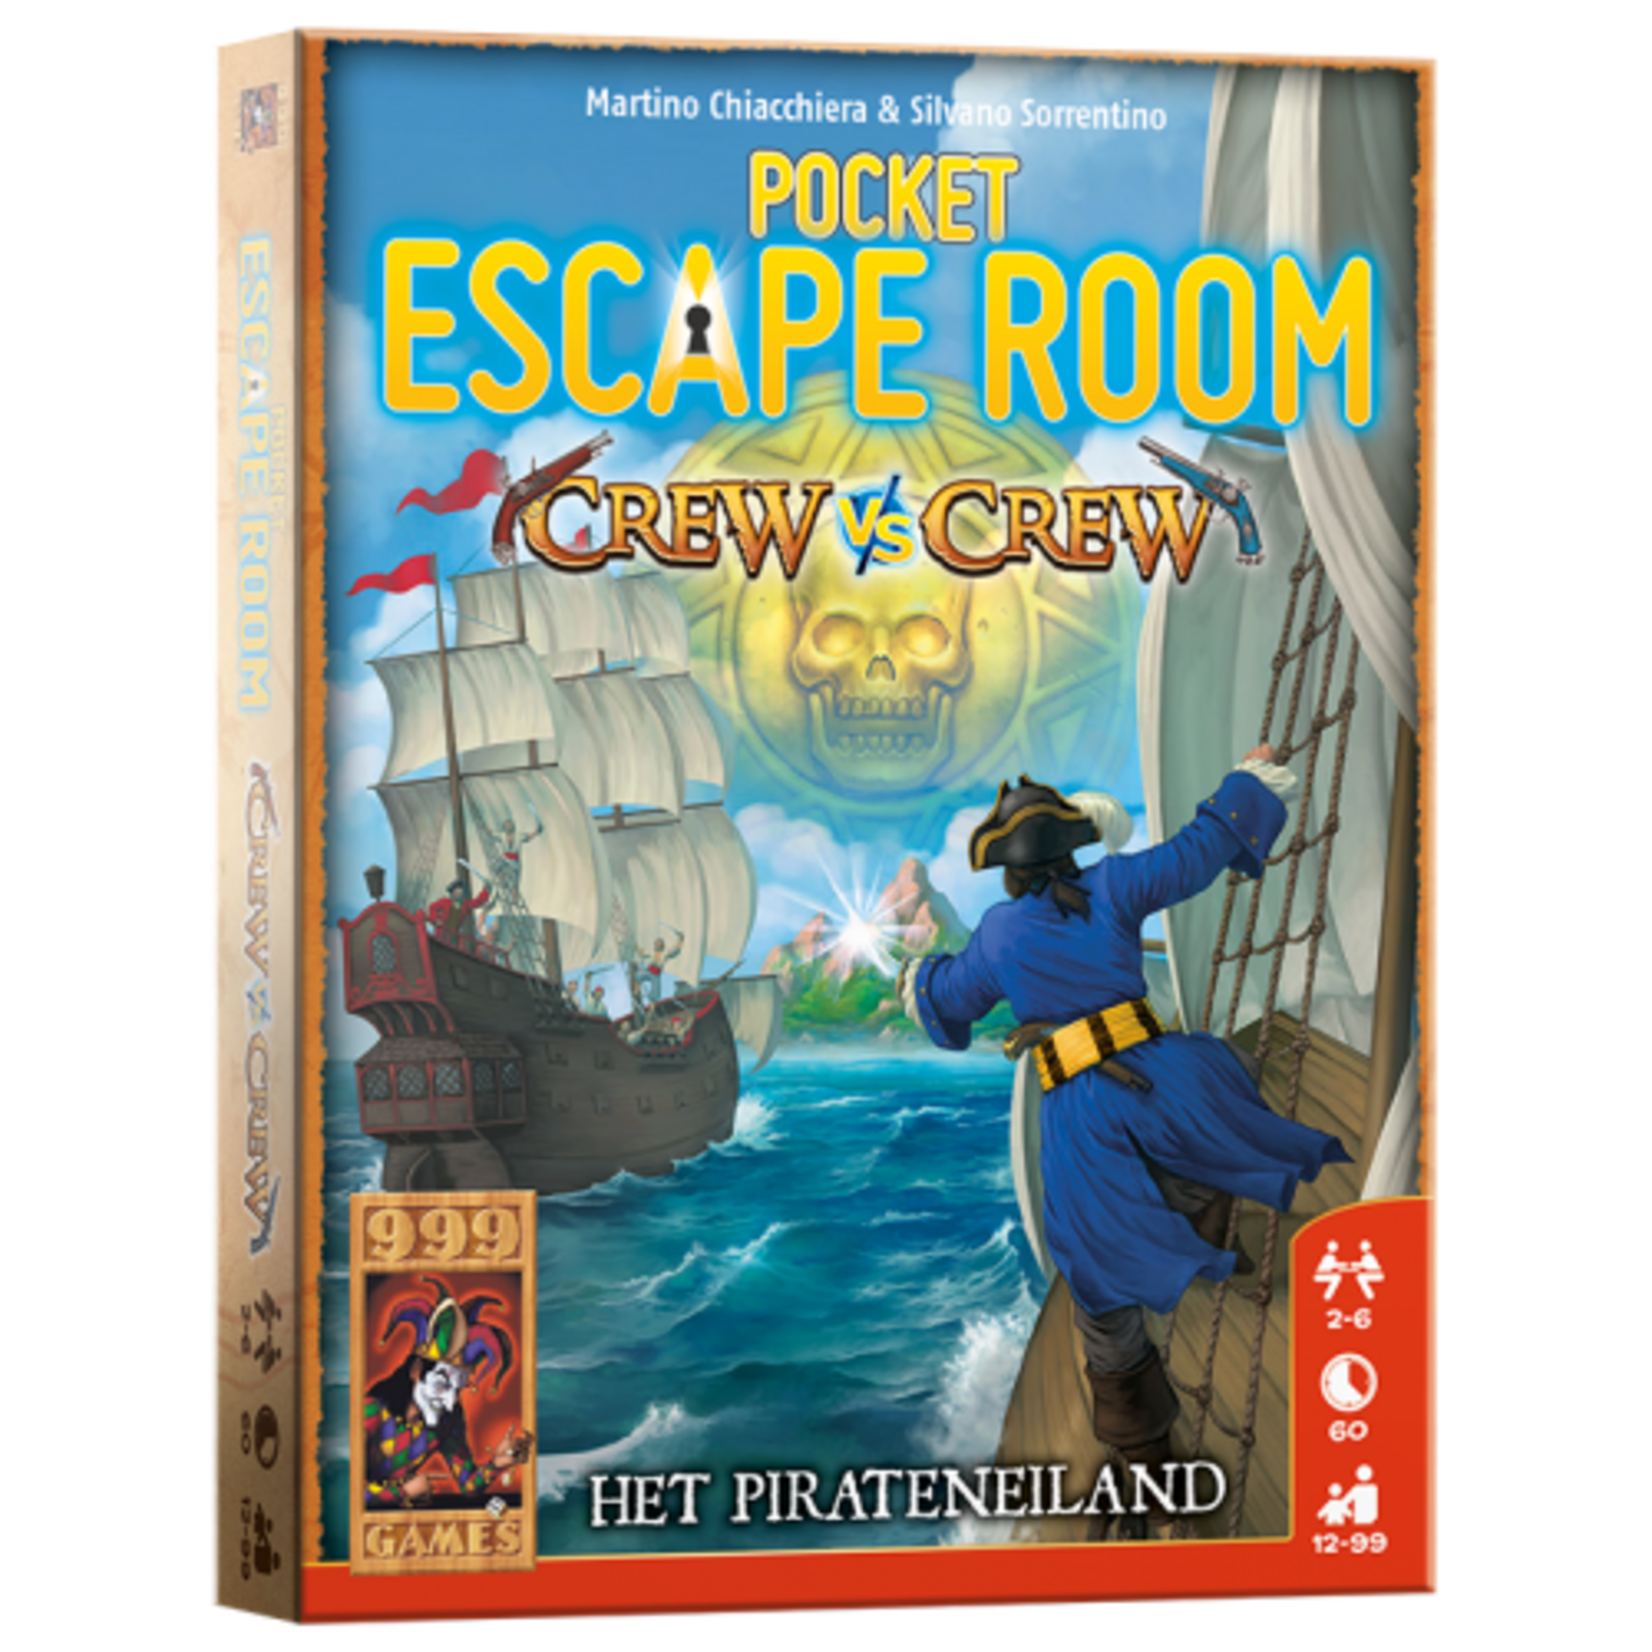 999 Games 999 Games pocket Escape Room - Crew vs Crew